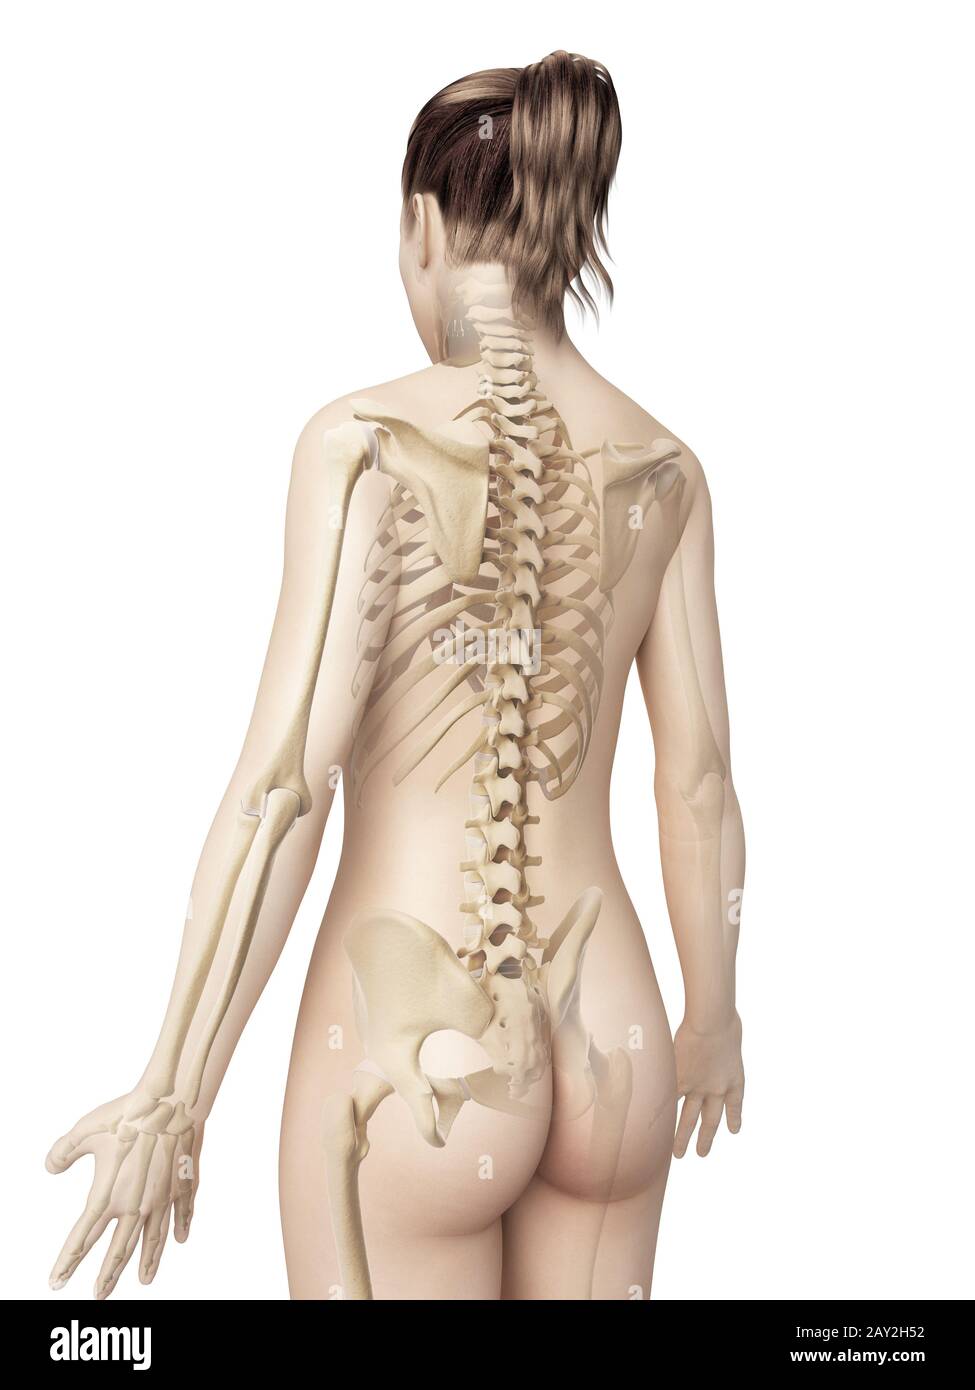 Анатомия женщины спина сзади